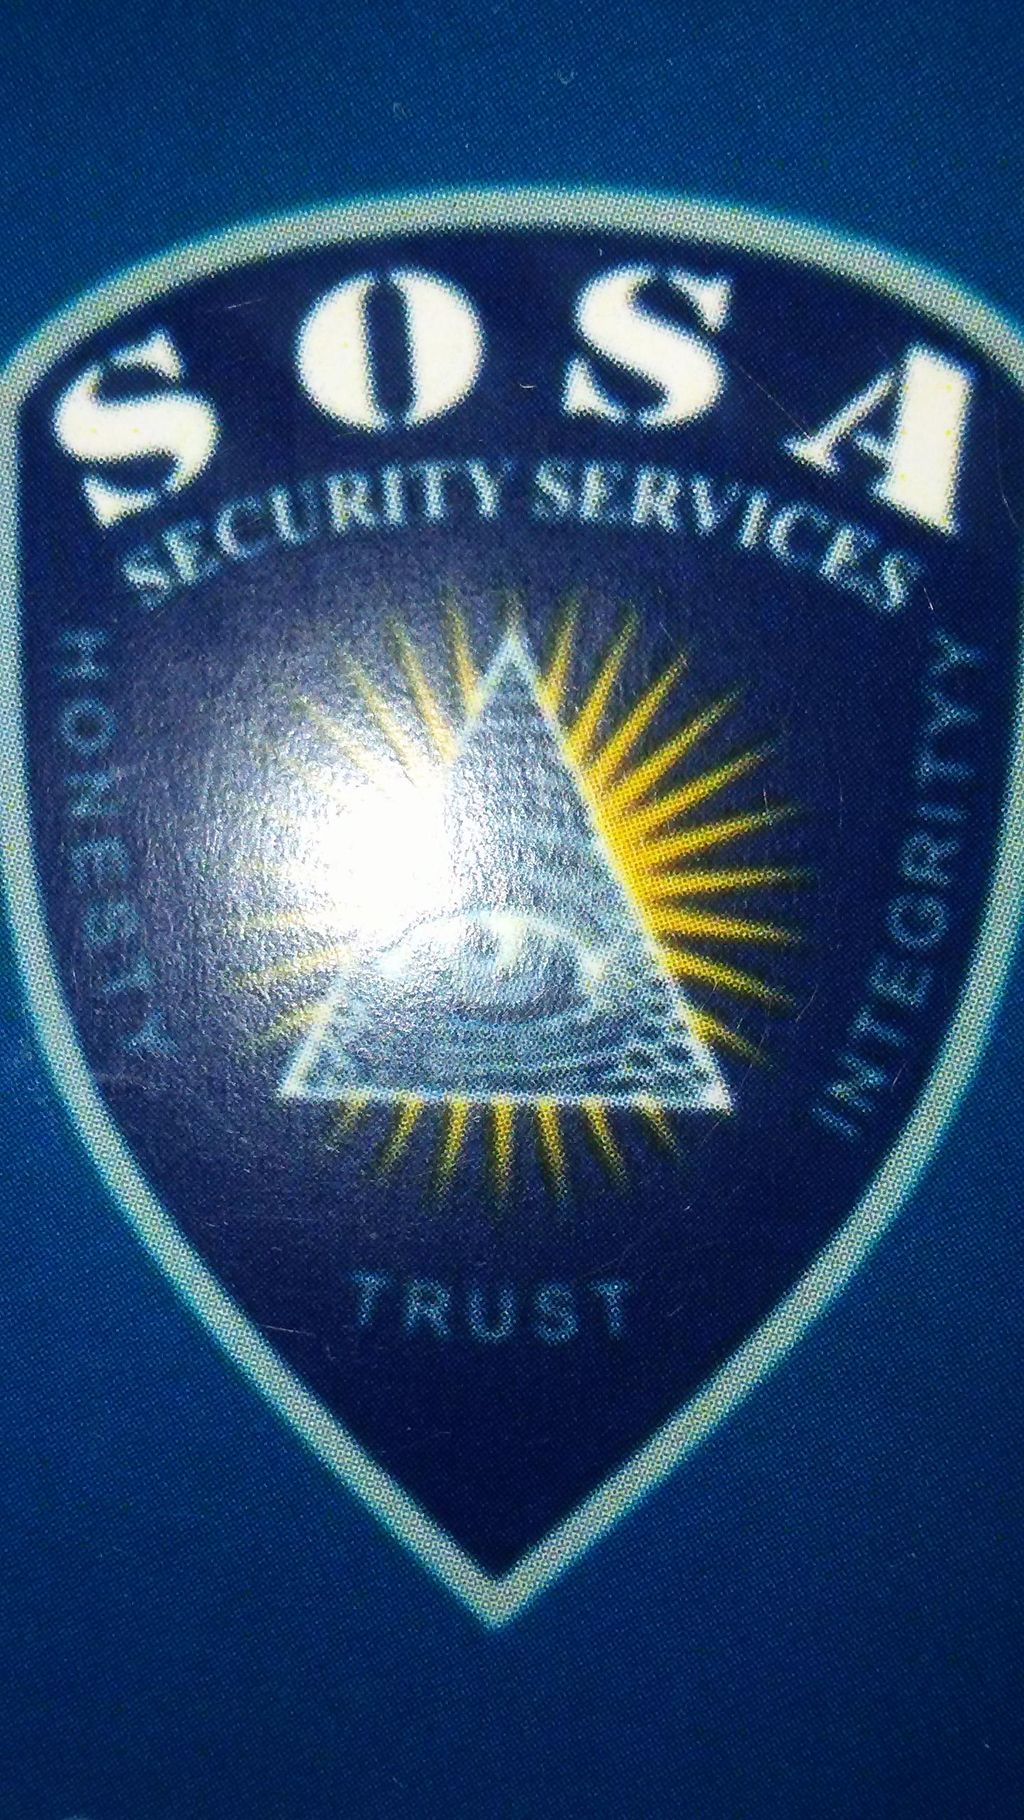 Sosa Security services